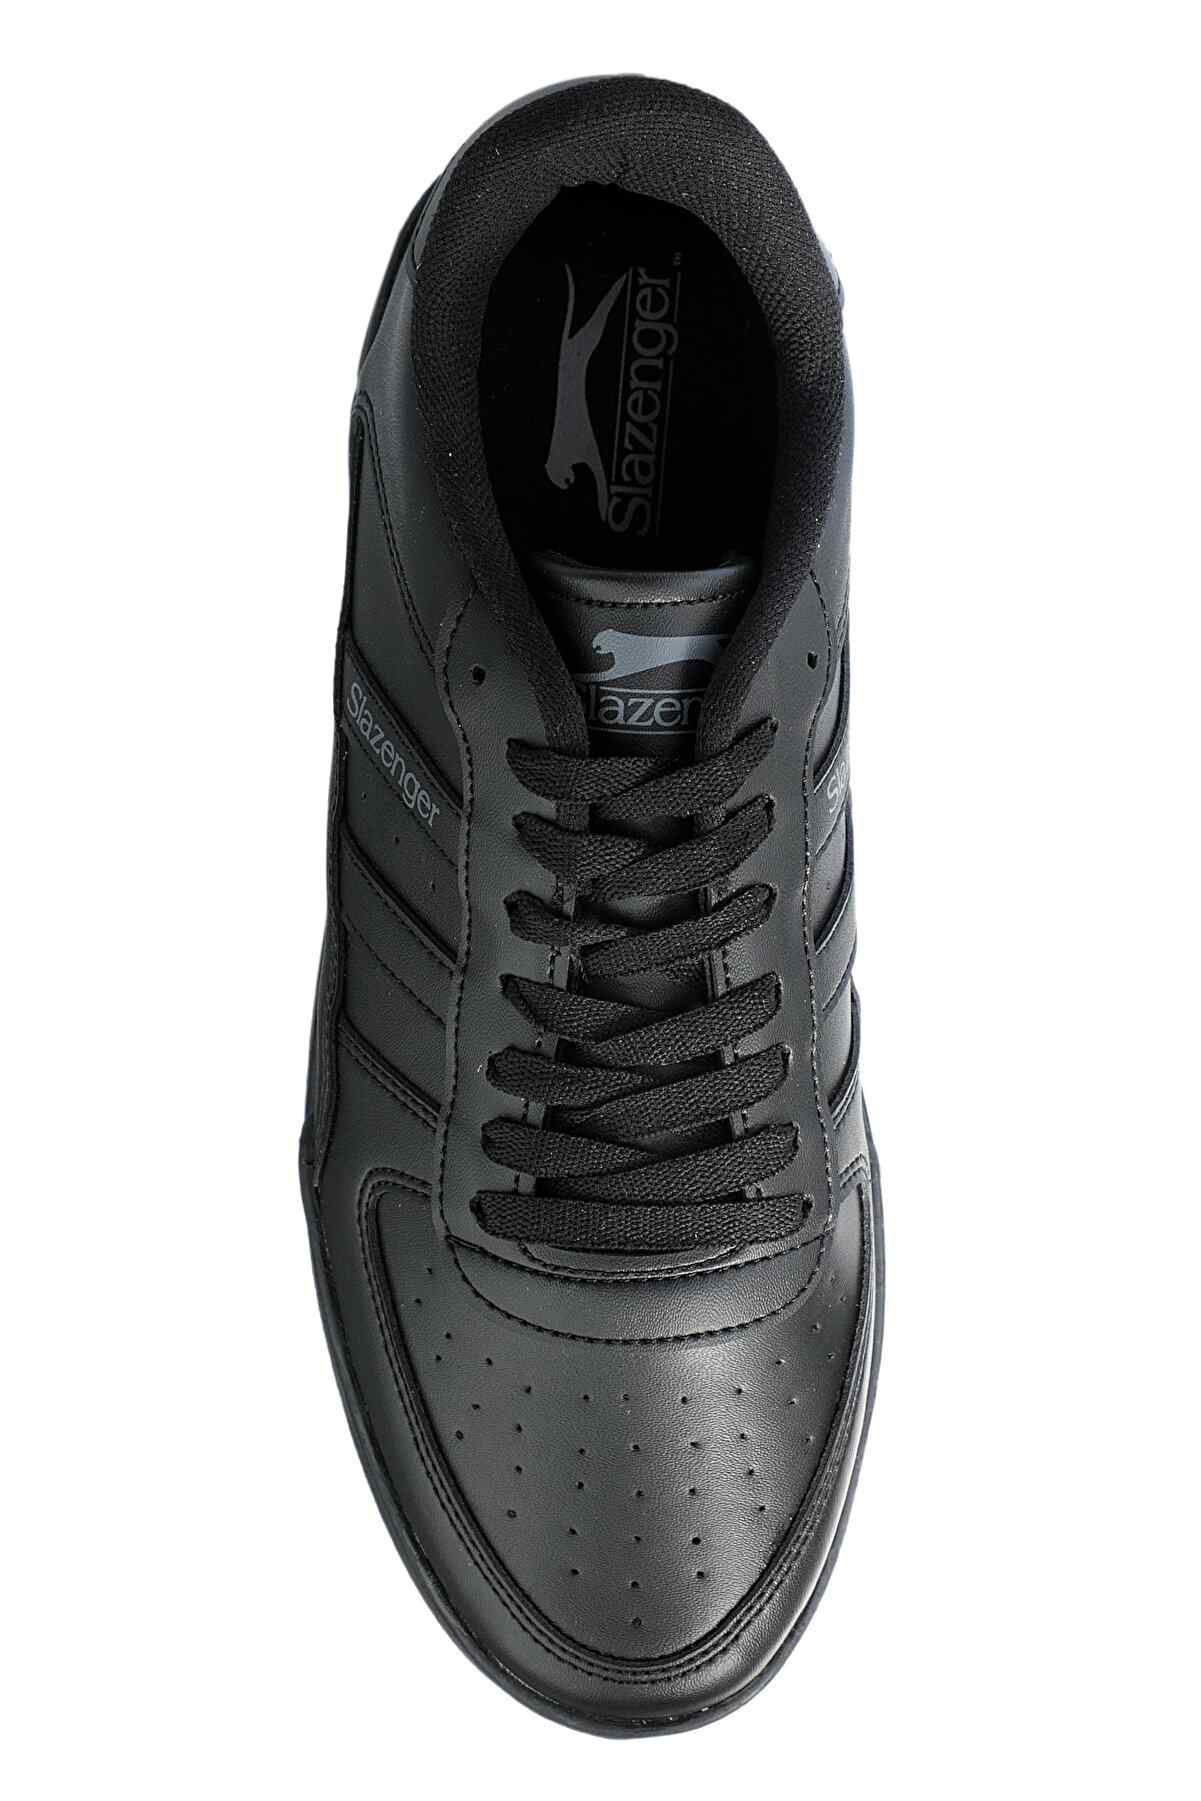 Slazenger Camp Sneaker Erkek Ayakkabı Siyah